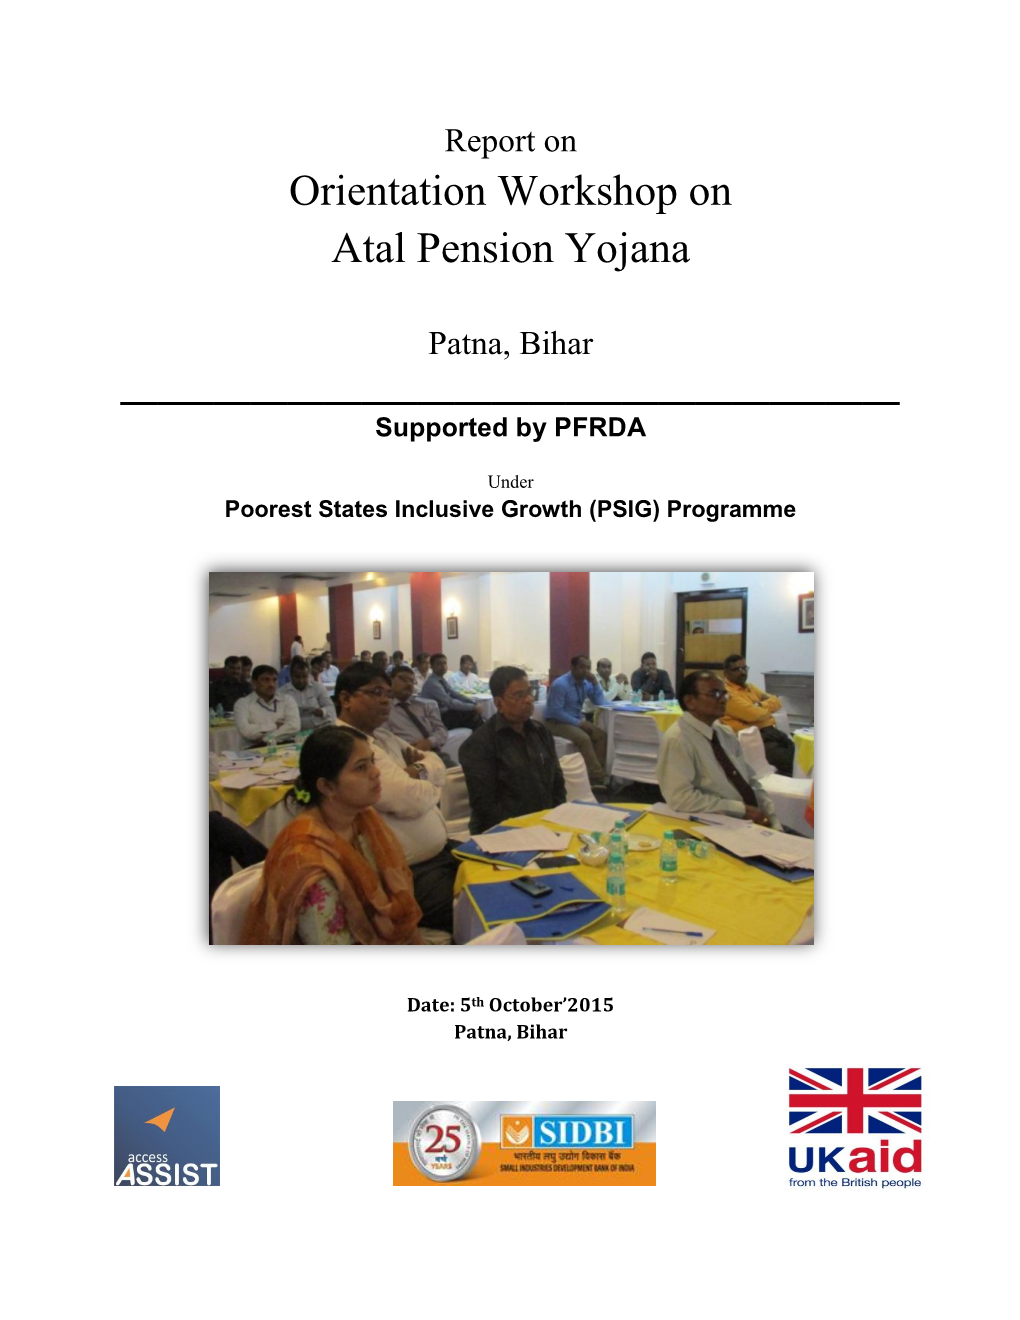 Orientation Workshop on Atal Pension Yojana